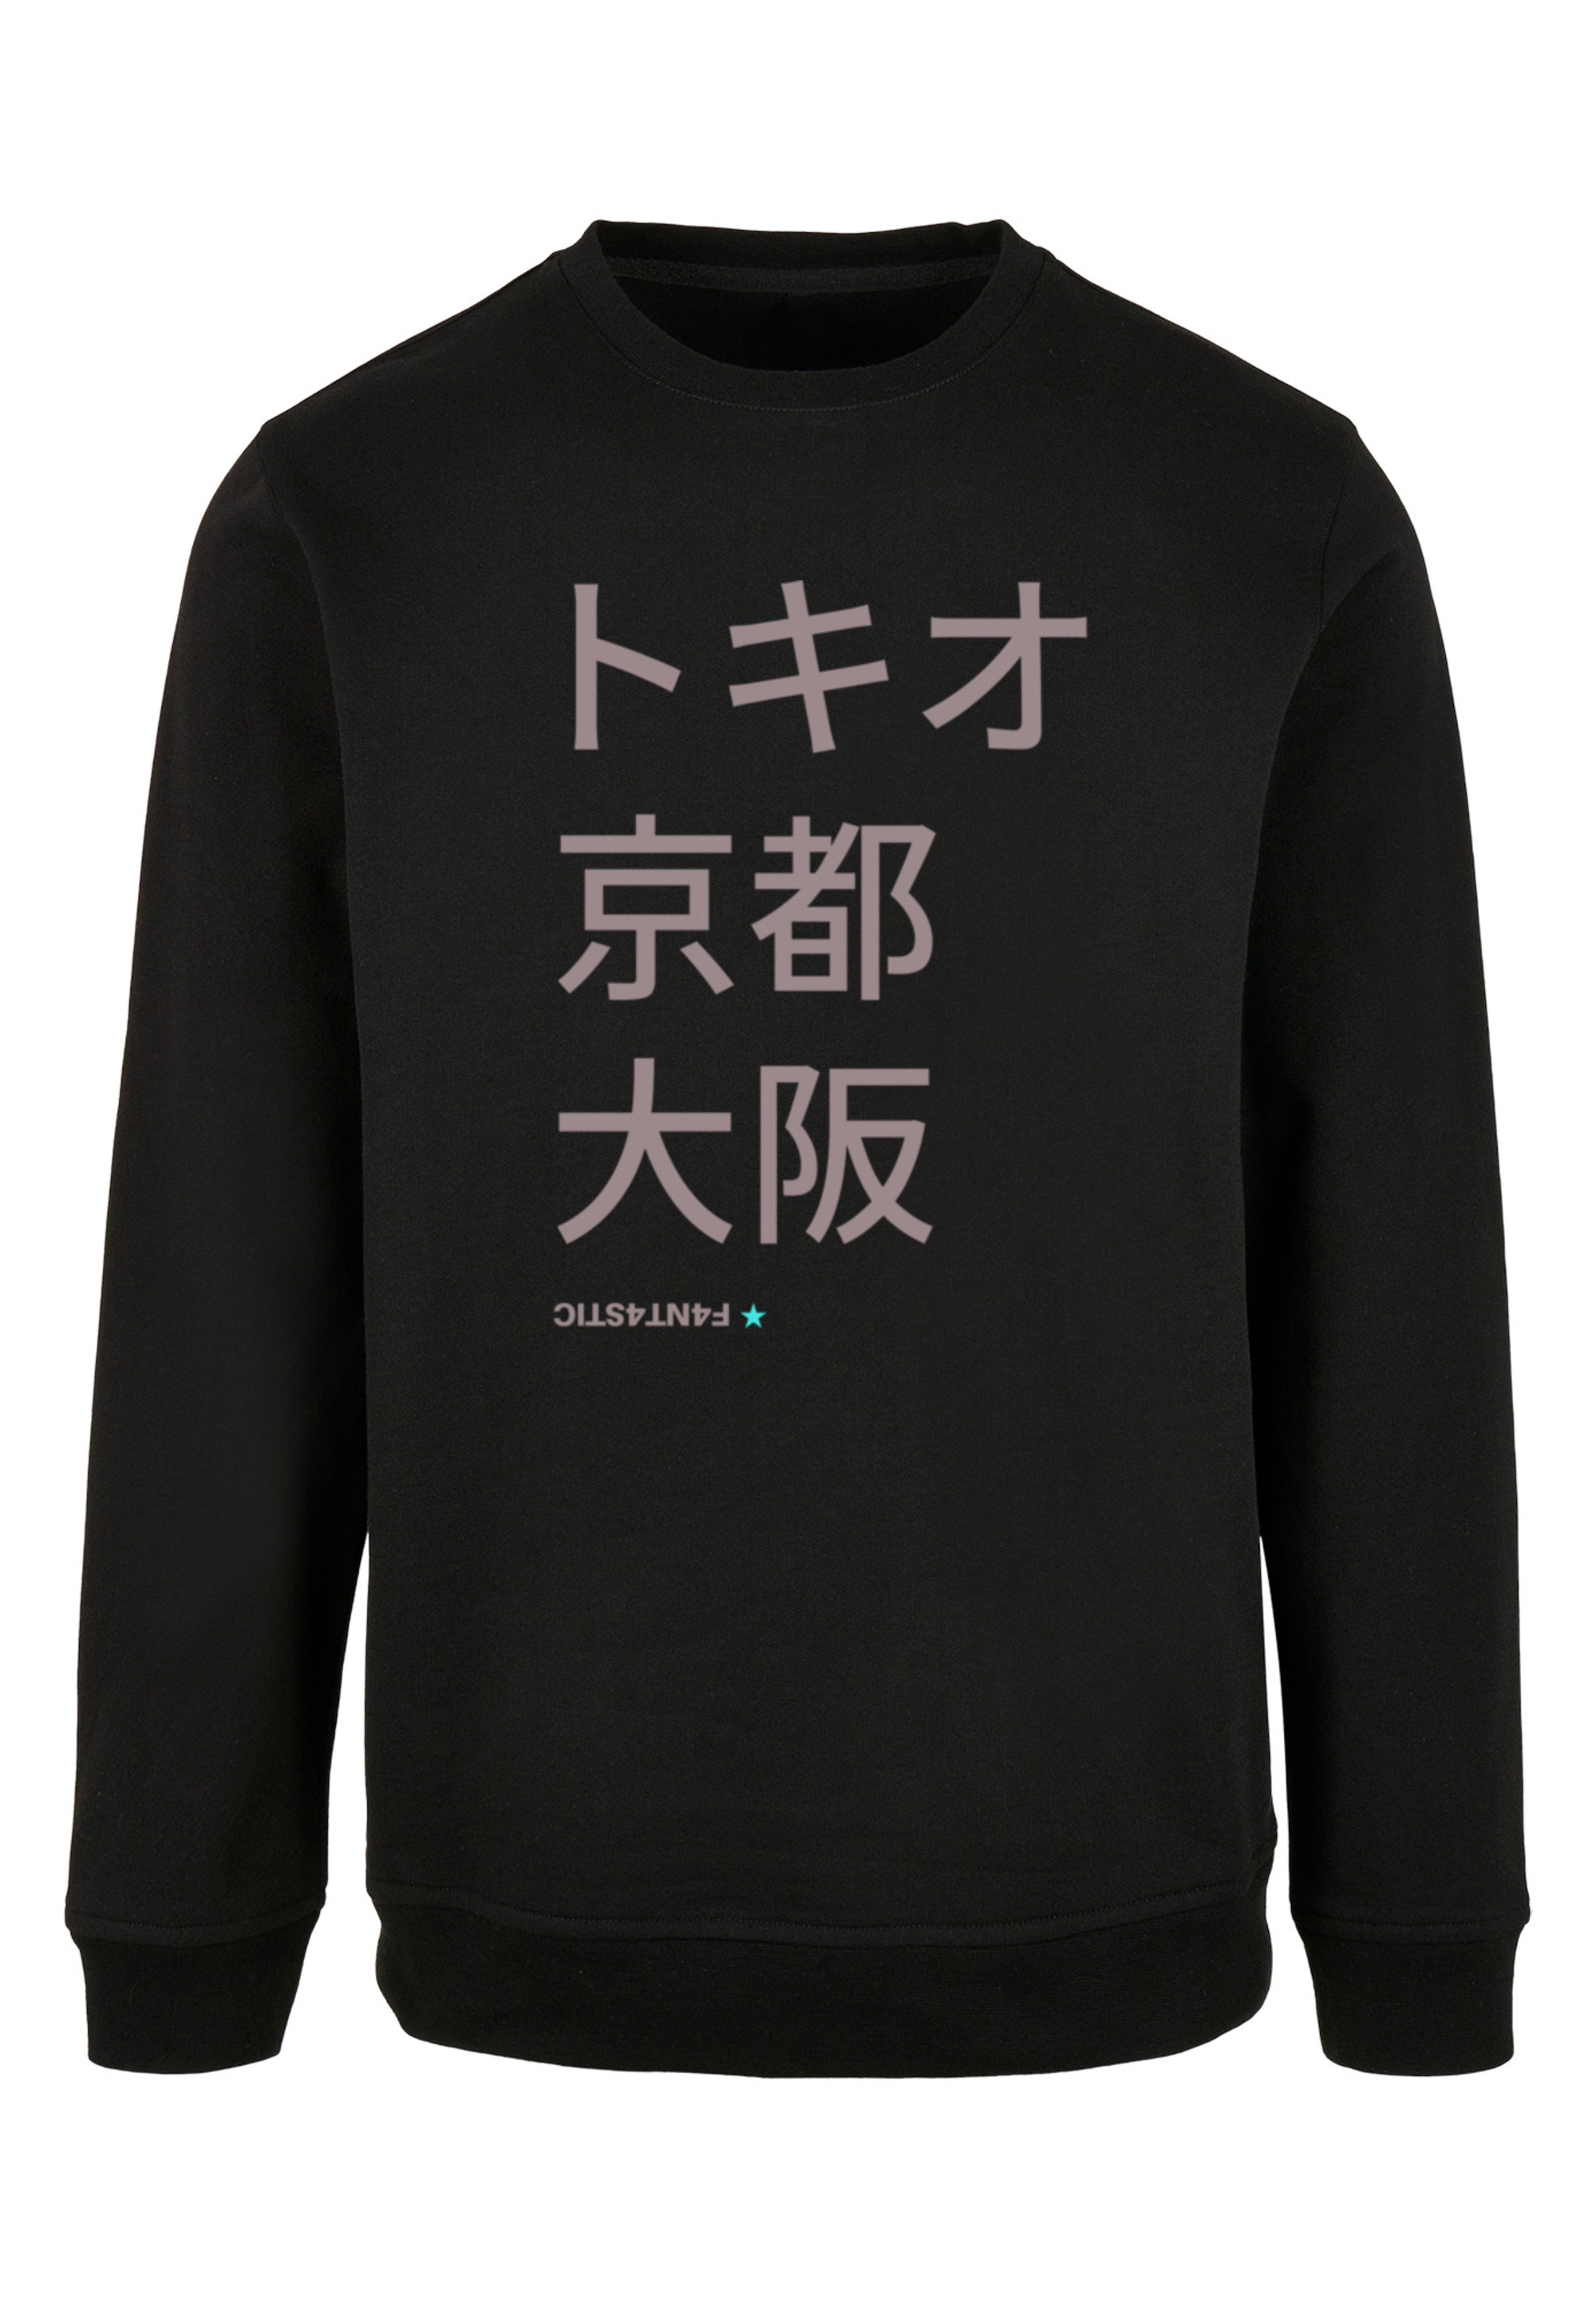 Пуловер F4NT4STIC Sweatshirt Tokio, Kyoto, Osaka, черный